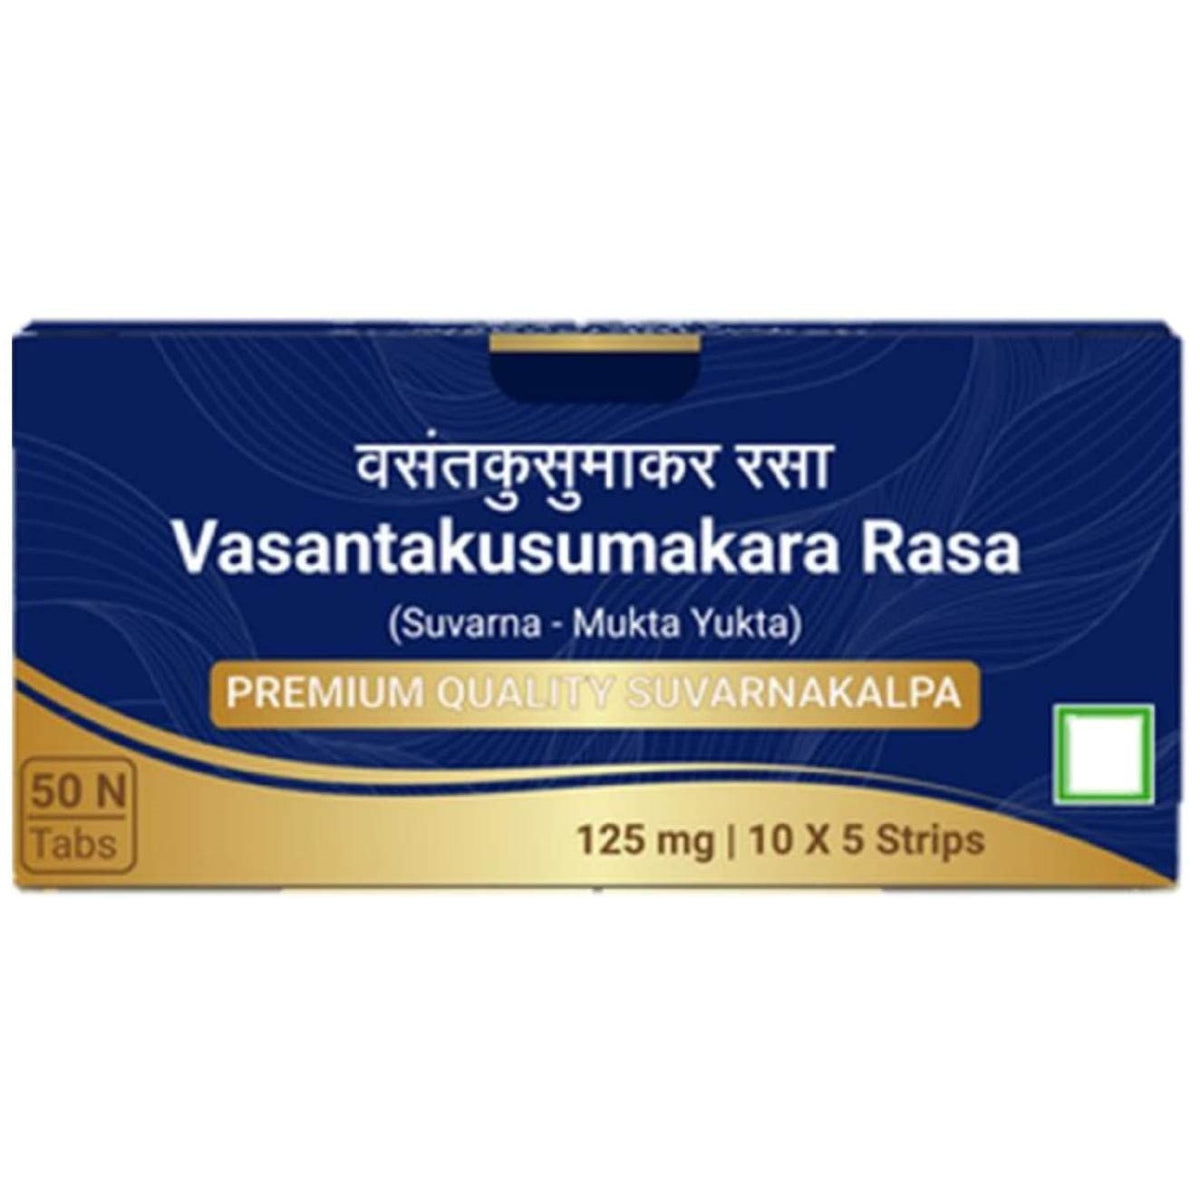 Sri Sri Tattva Ayurvedic Vasant Kusumakar Ras Suvarnakalpa 10 Strips Tablets